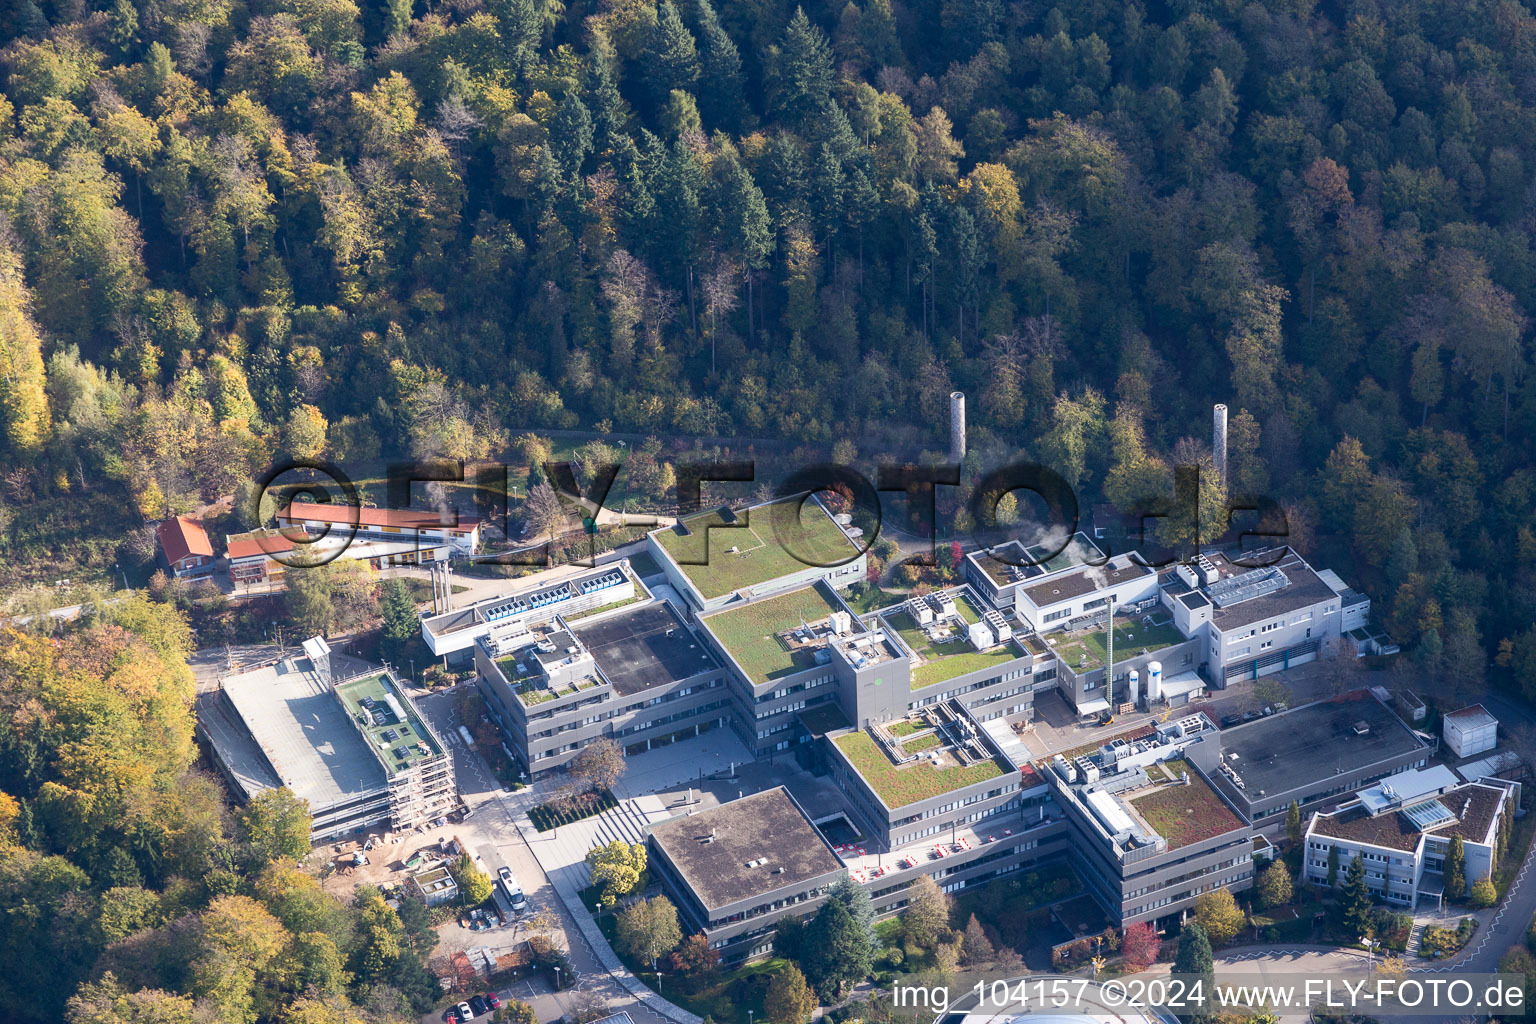 Vue aérienne de EMBL à le quartier Rohrbach in Heidelberg dans le département Bade-Wurtemberg, Allemagne